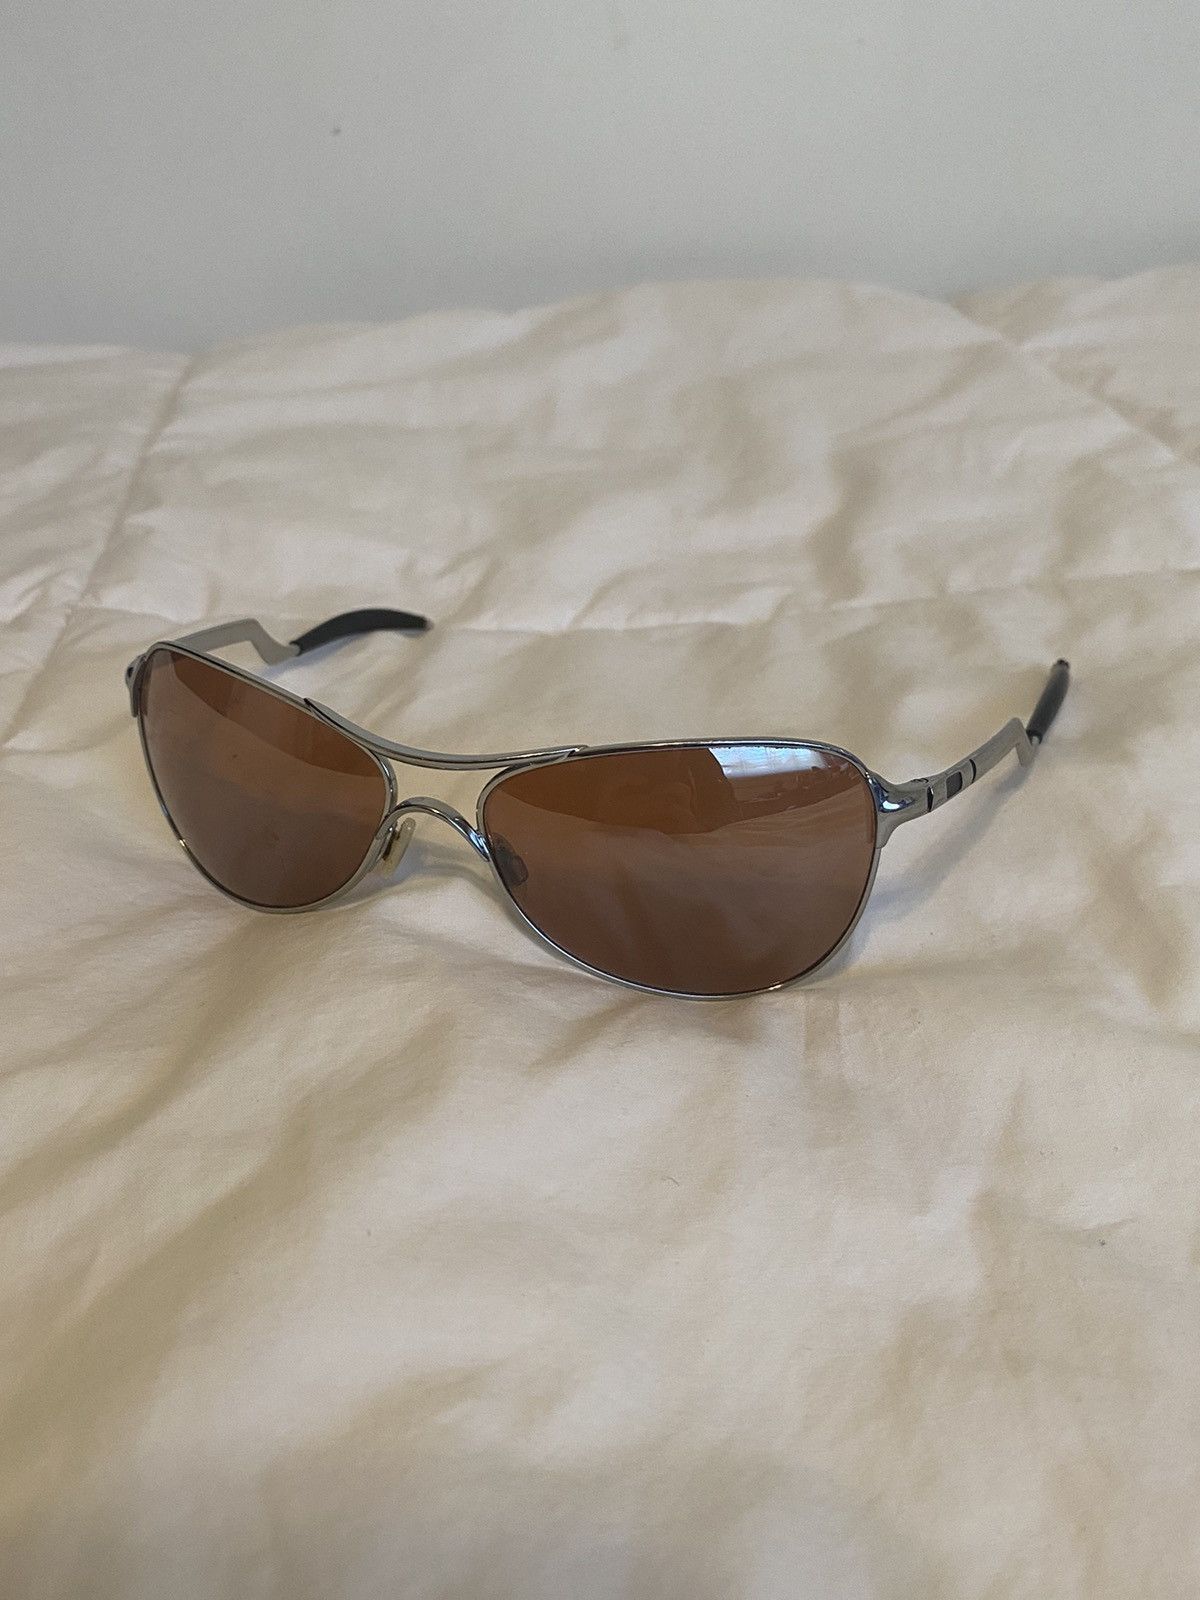 Vintage Rare Oakley Warden Sunglasses | Grailed